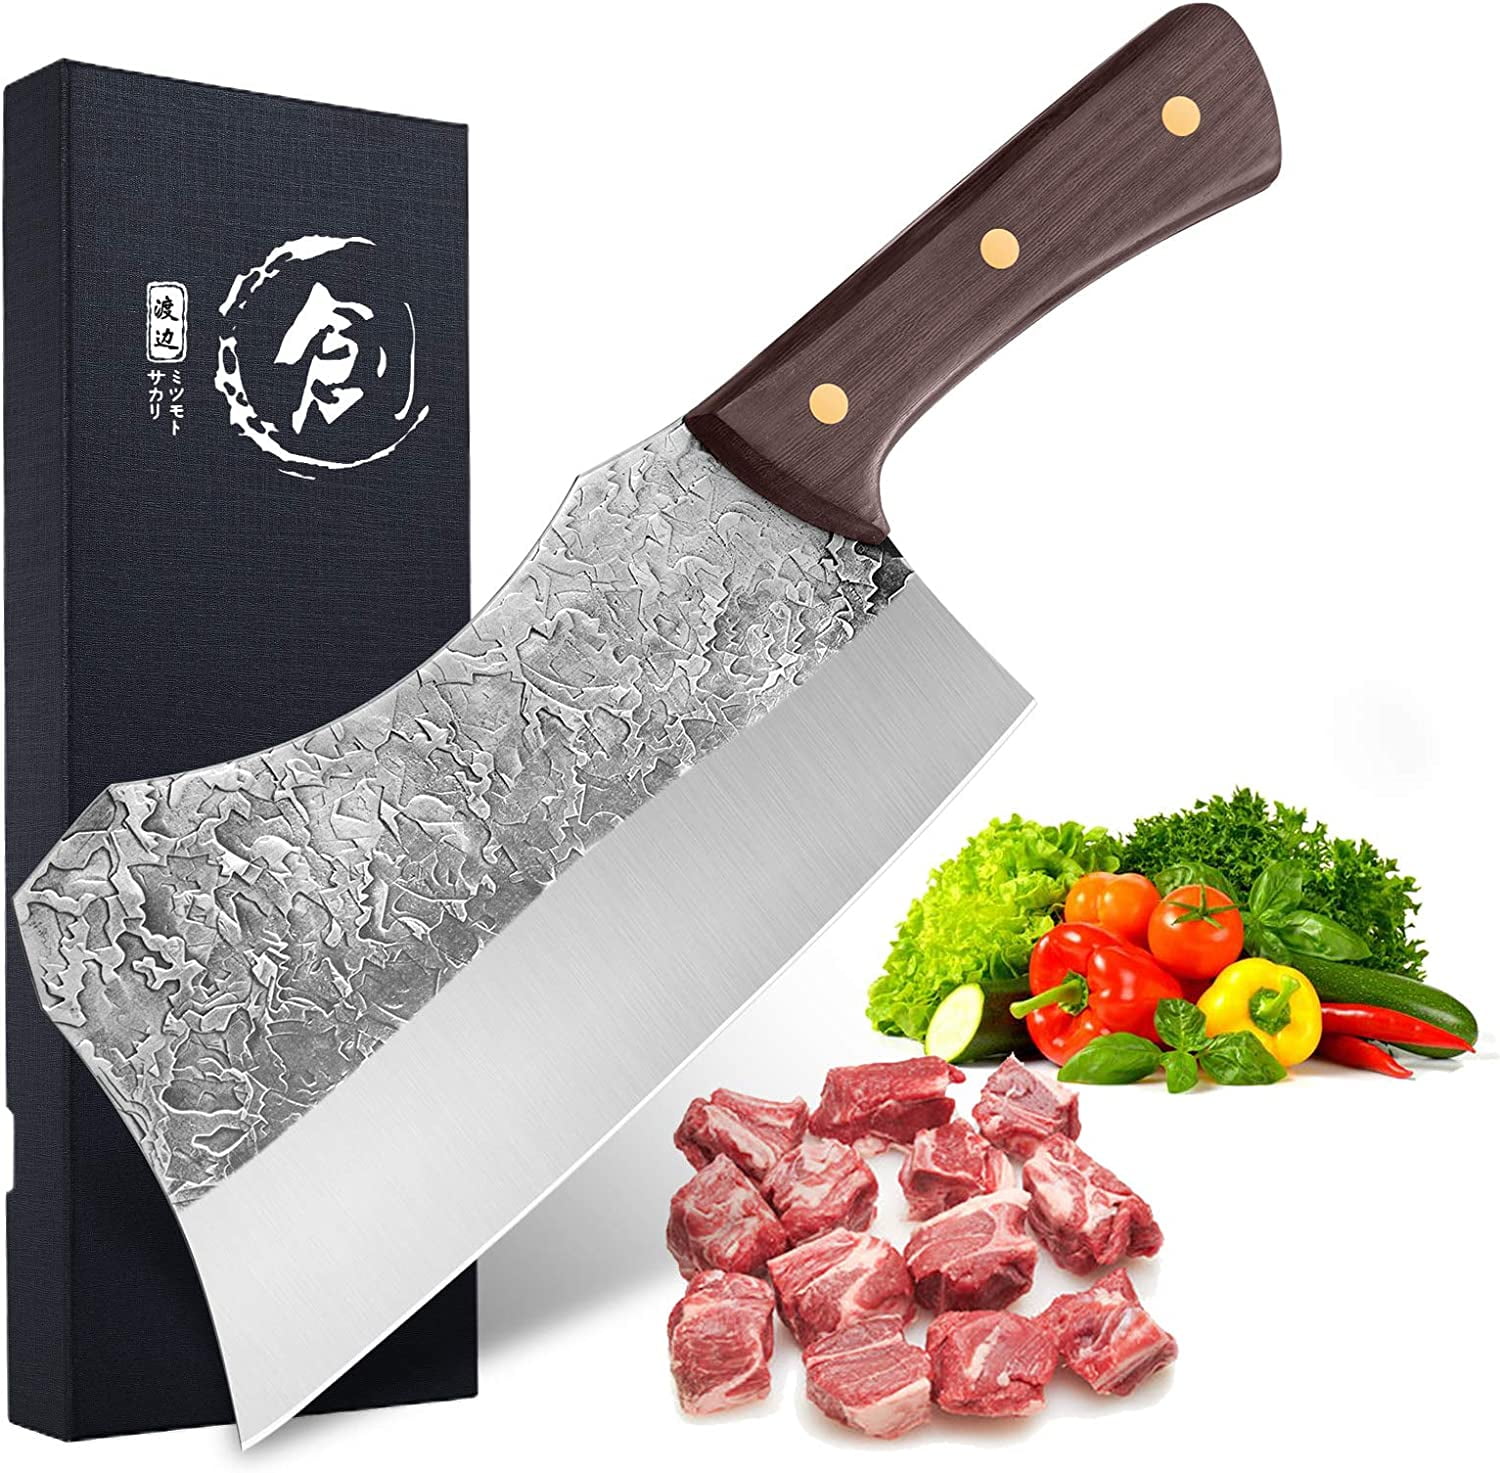 7 Inch Cleaver Knife Big Butcher Fixed Blade Knife Meat Bone